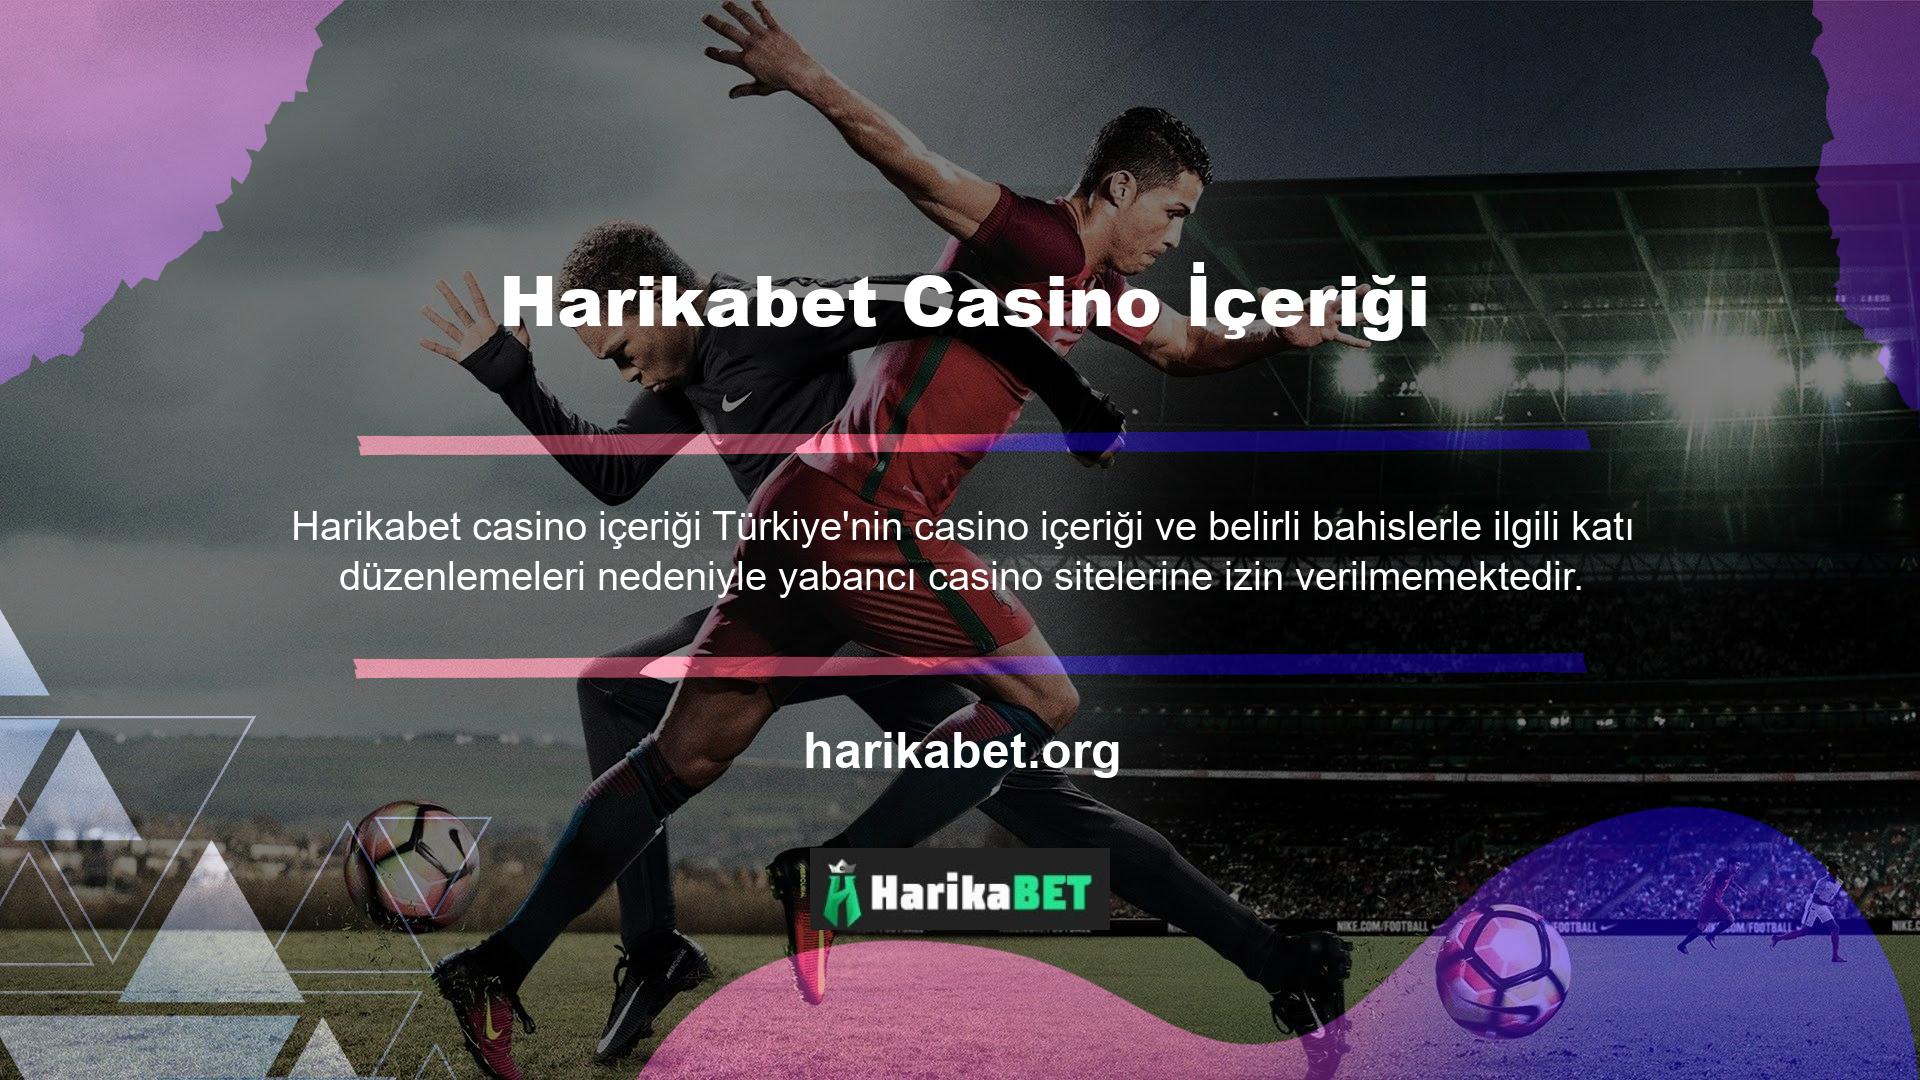 Bu, Harikabet yüksek kaliteli, lisanslı giriş sitelerinin, sırf Türkiye'de lisanslı olmadıkları için yasa dışı casino siteleri olarak damgalanmasına yol açtı